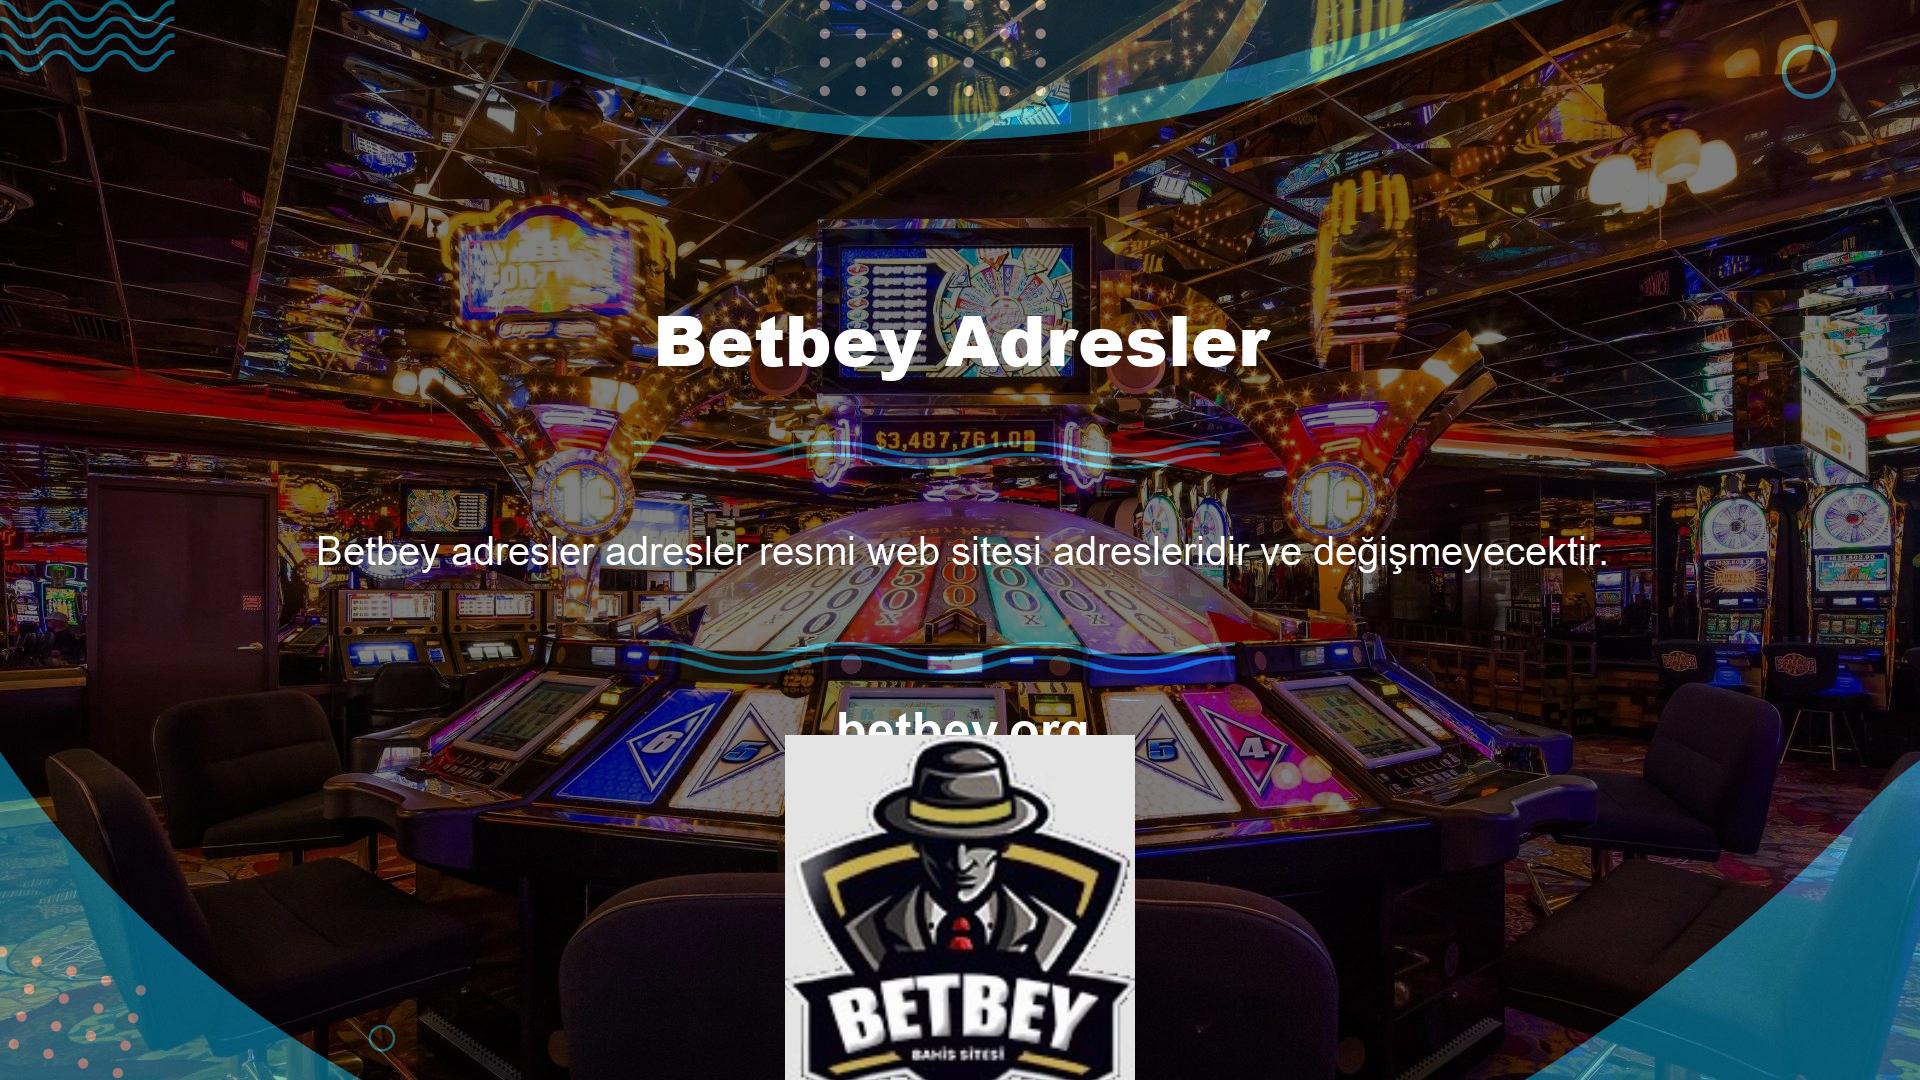 Her casino sitesi gibi Betbey Canlı Casino da canlı casino oyunları sunmaktadır